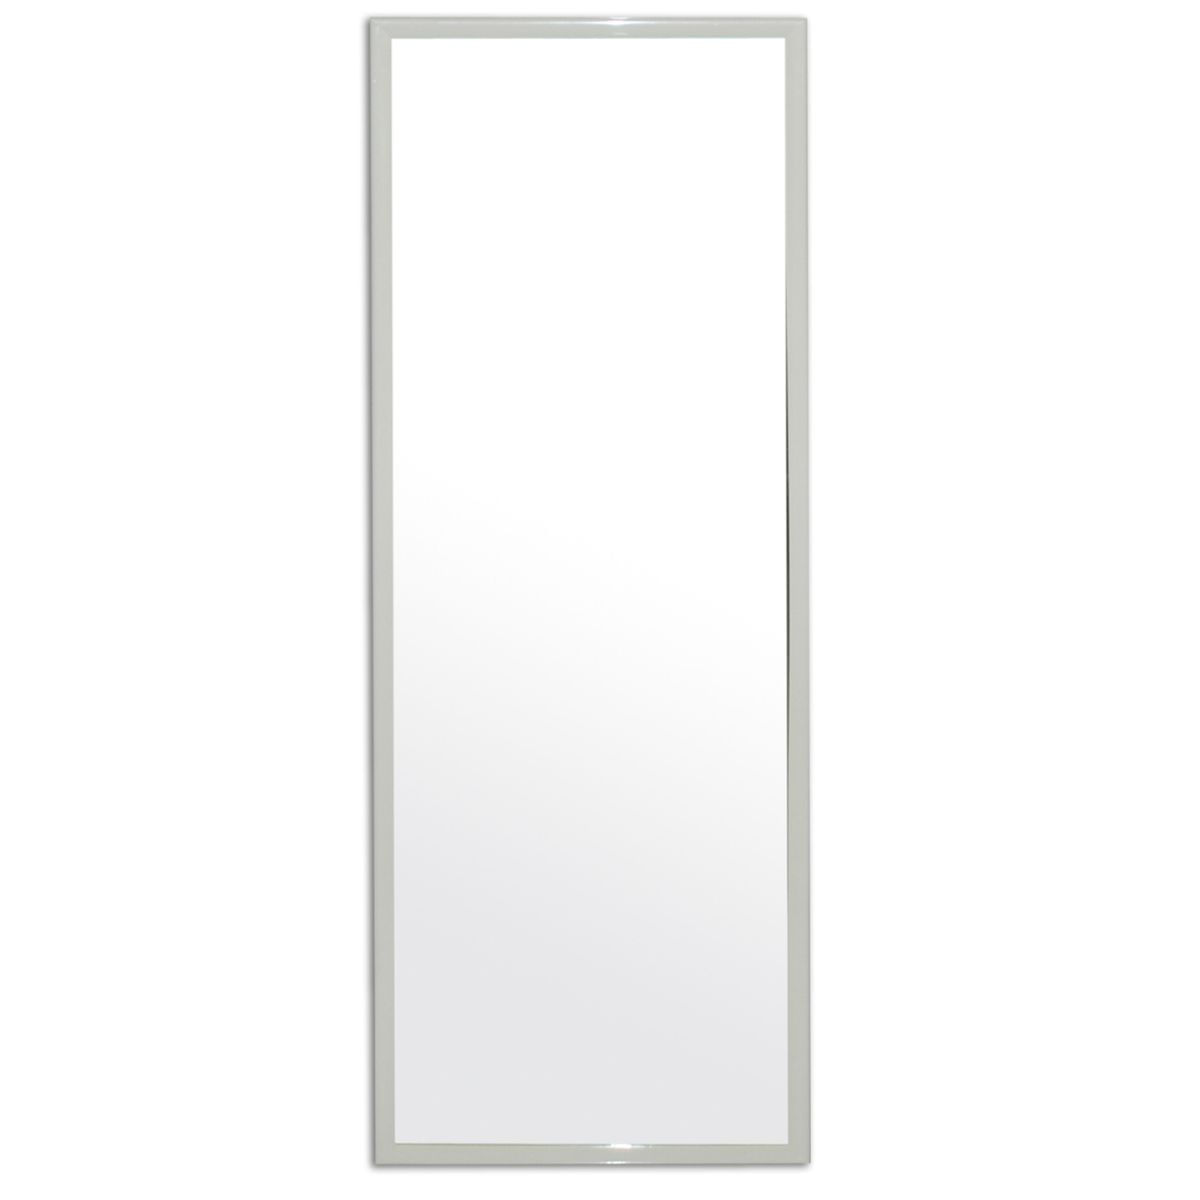 Saindo por R$ 19,9: Espelho Emoldurado Retangular 90x30cm Carrefour HO55216 | Pelando